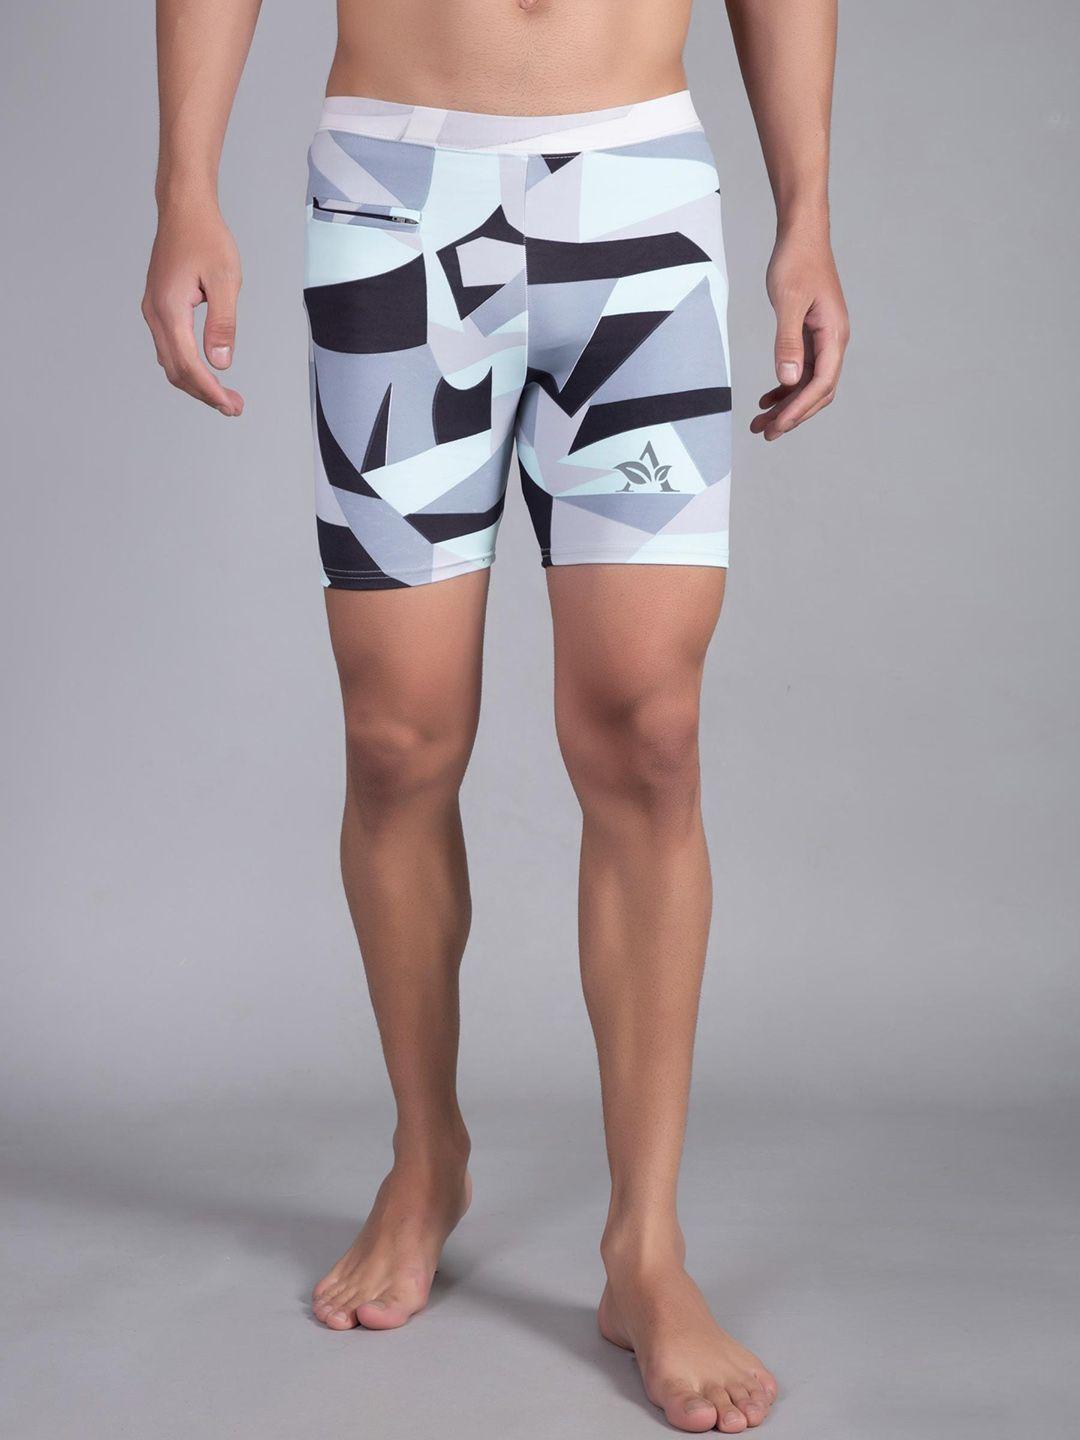 apraa-&-parma-men-skinny-fit-geometric-printed-dri-fit-sports-shorts